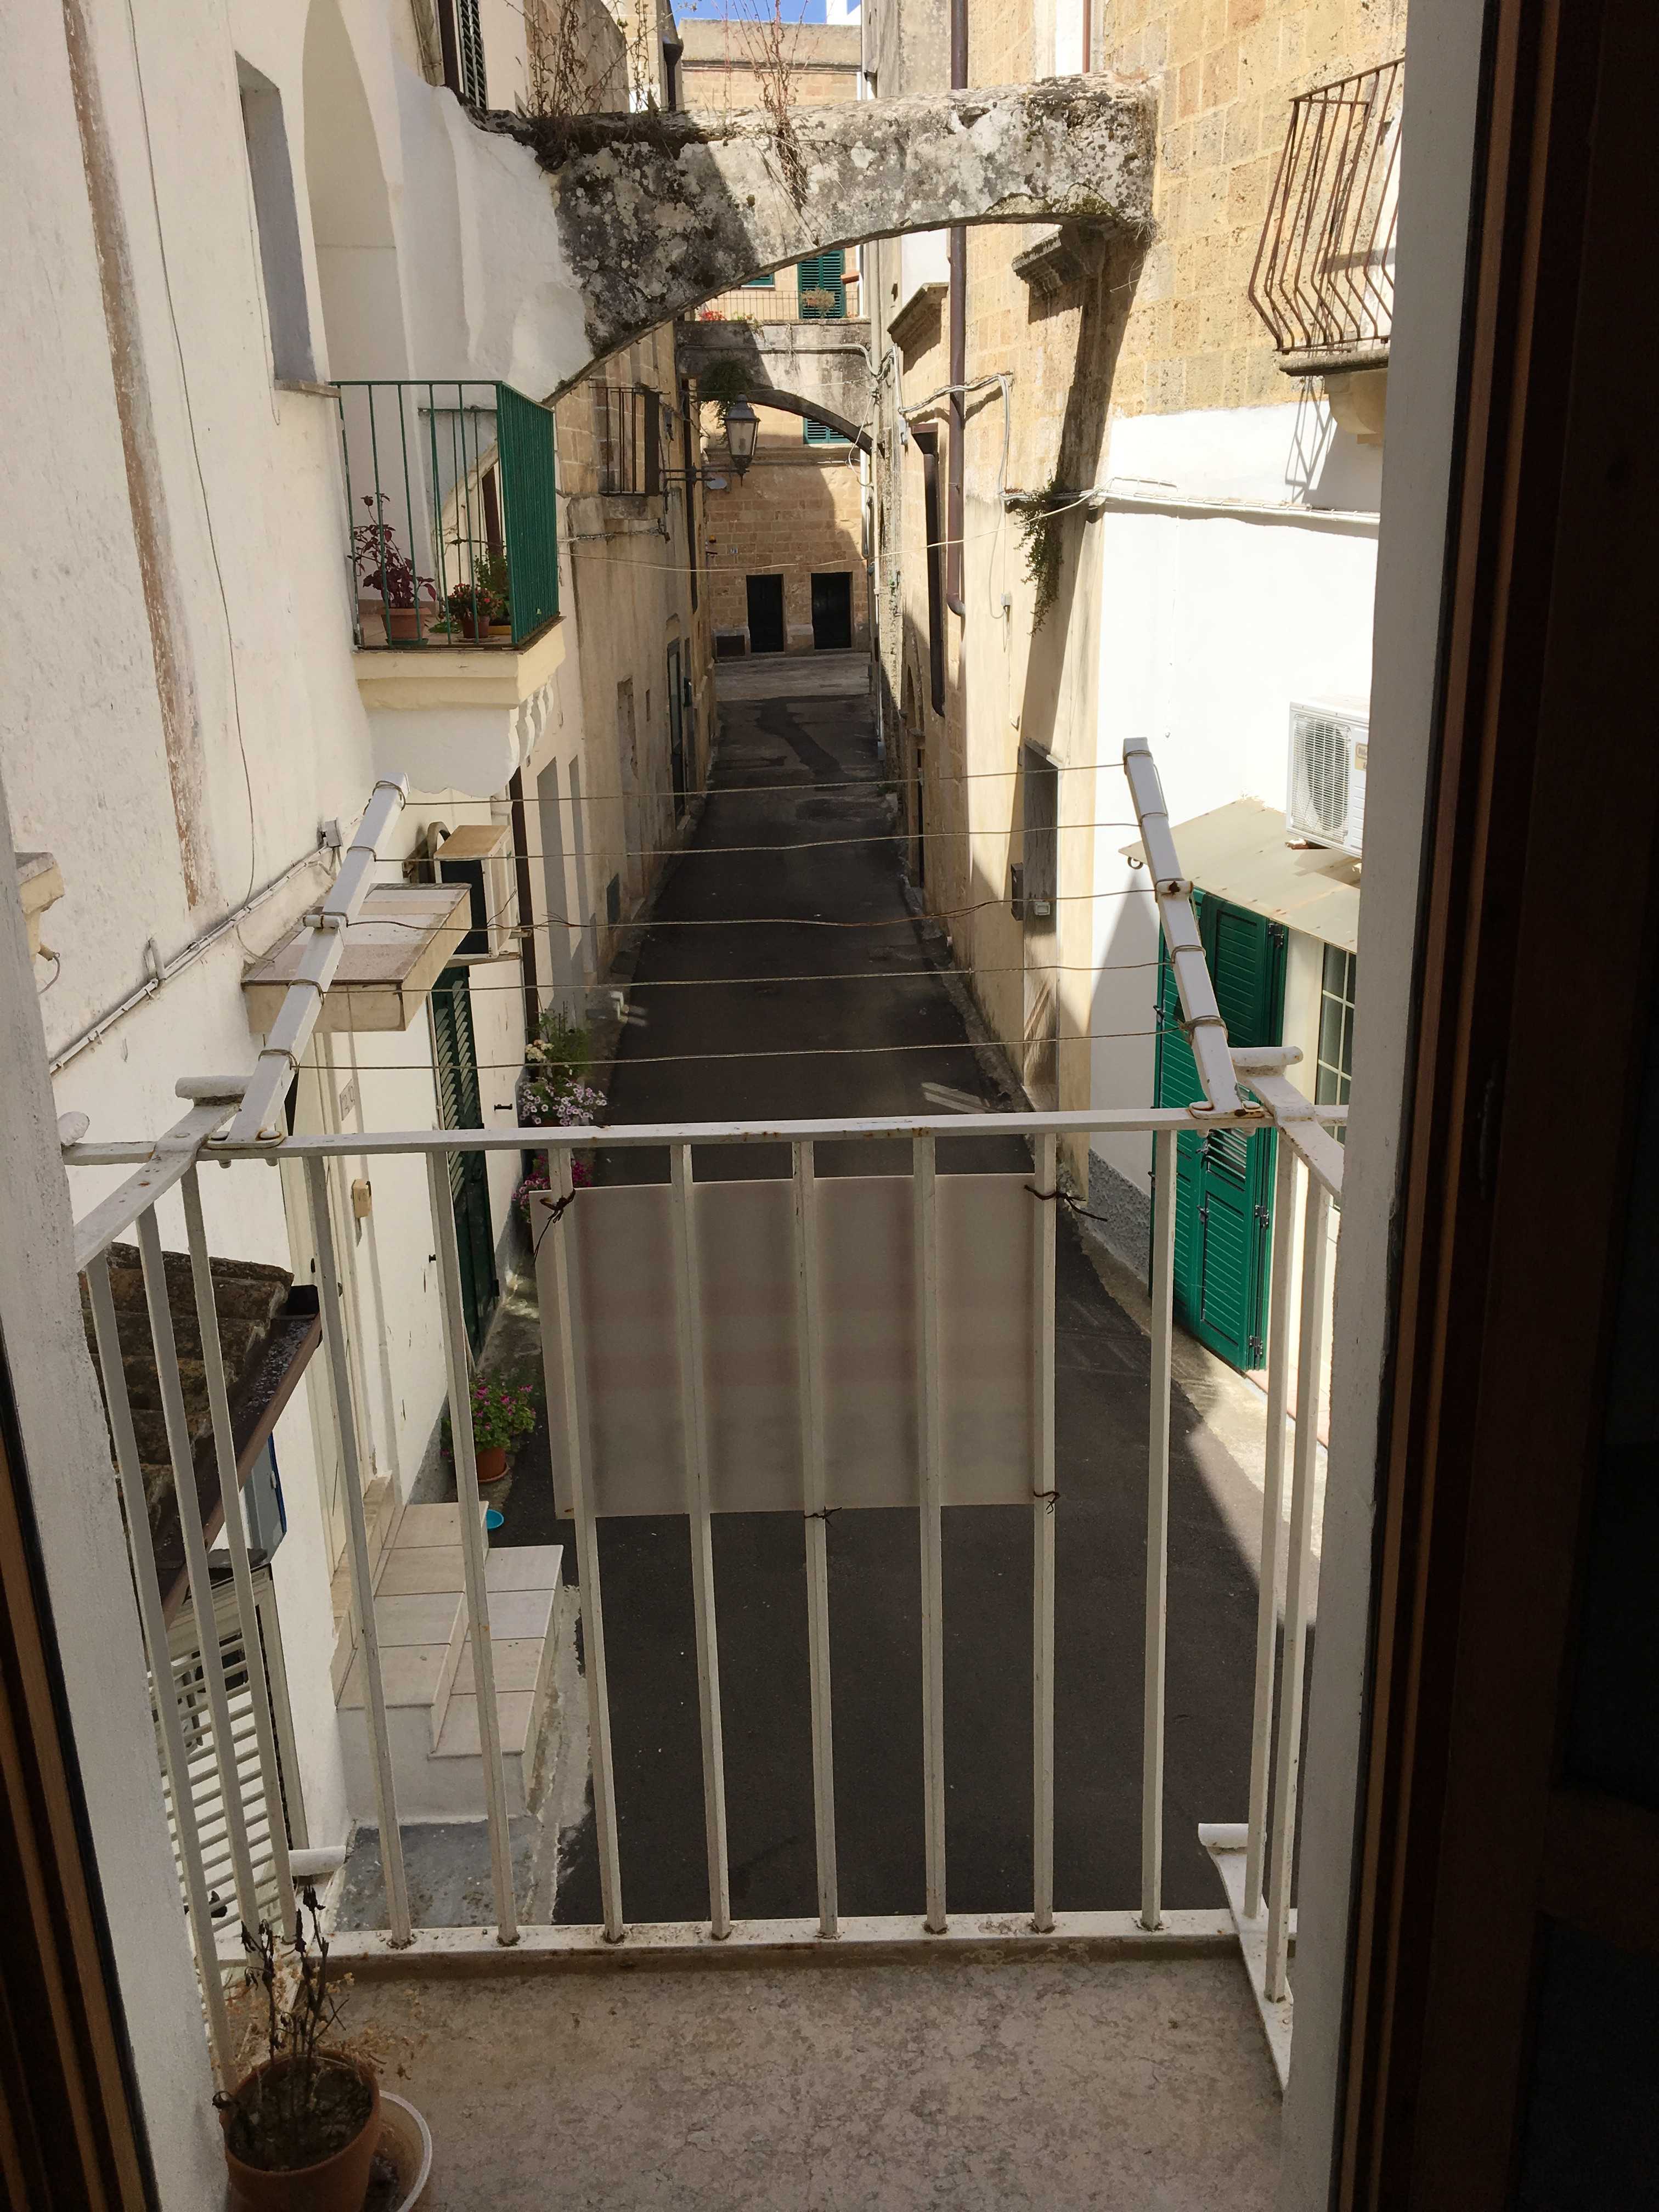 Vendite Salento: Vendita appartamento (Alessano) - balcone